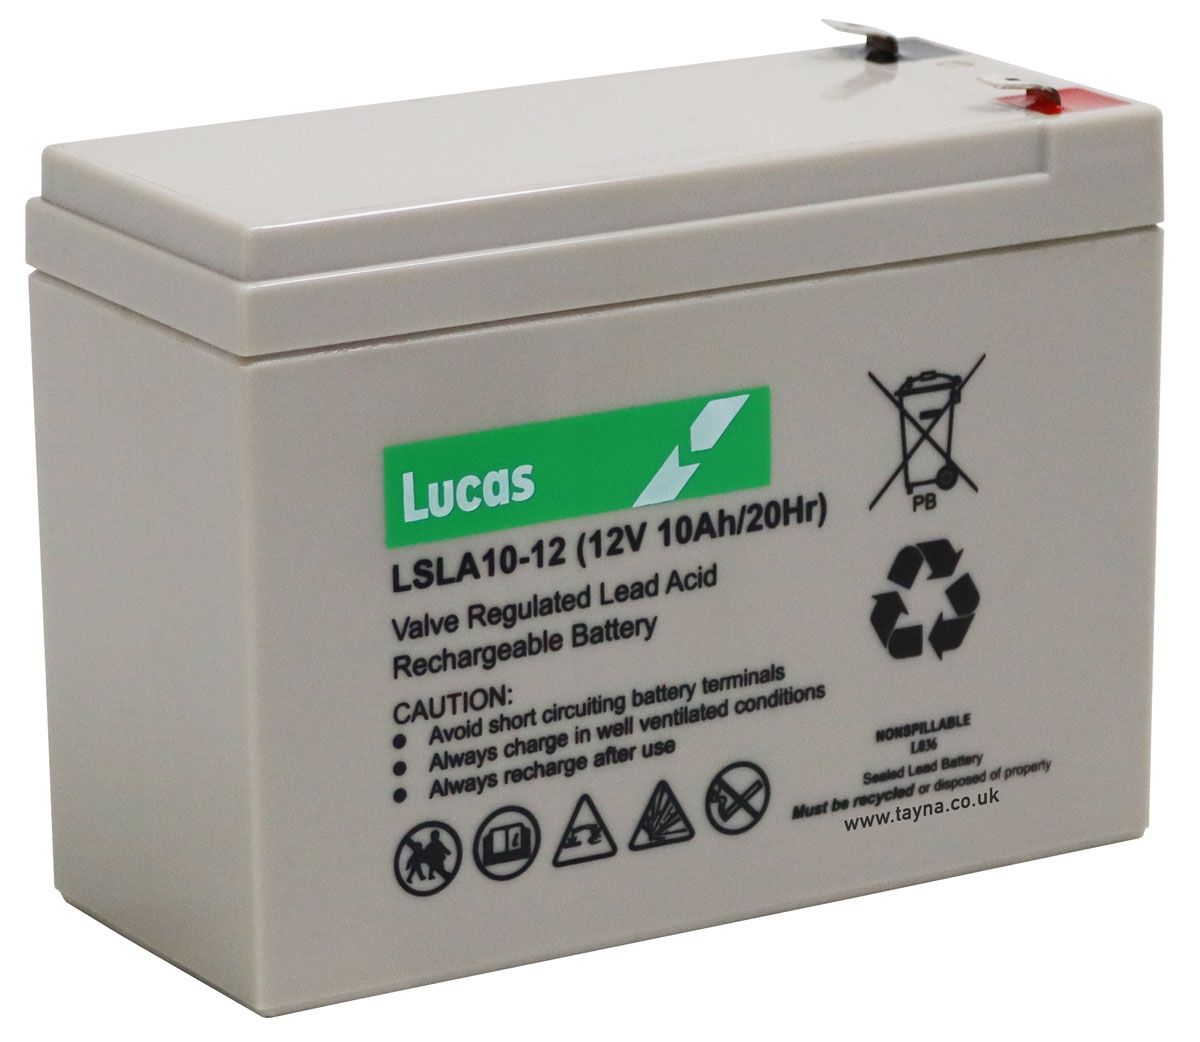 Lsla10 12 Lucas Sealed Lead Acid Battery 12v 10ah